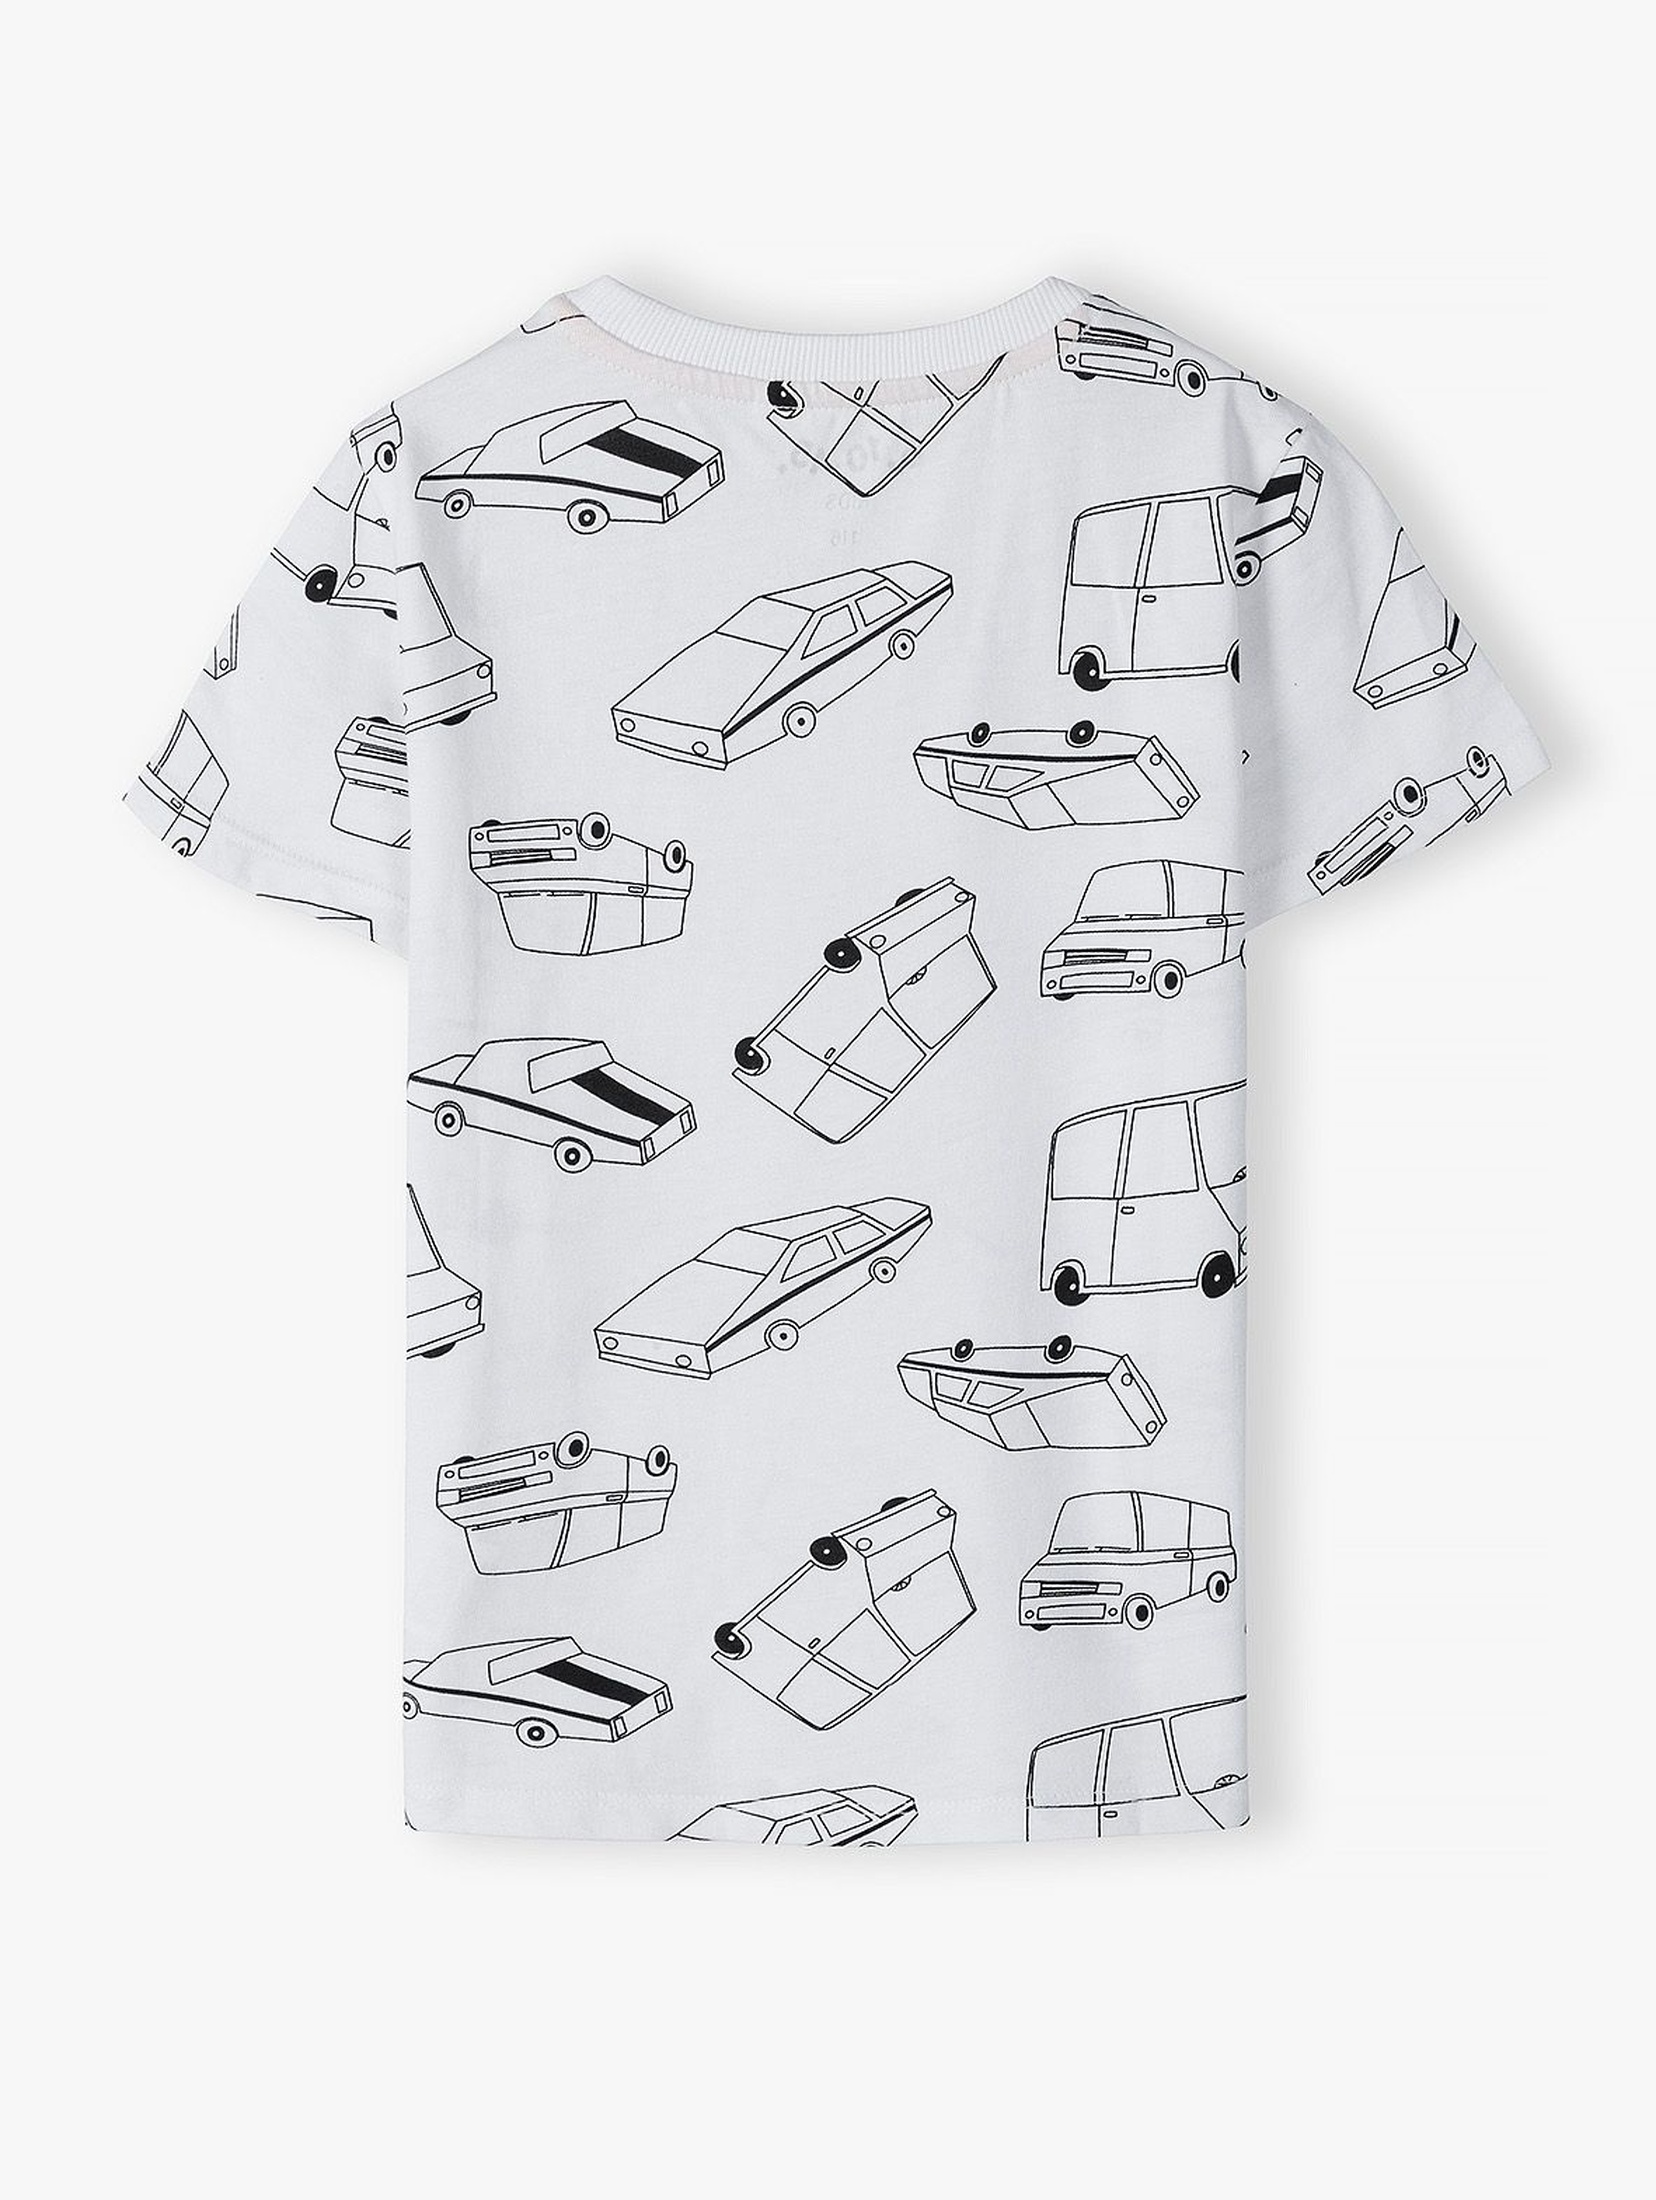 Bawełniany t-shirt chłopięcy w kolorze białym z samochodami